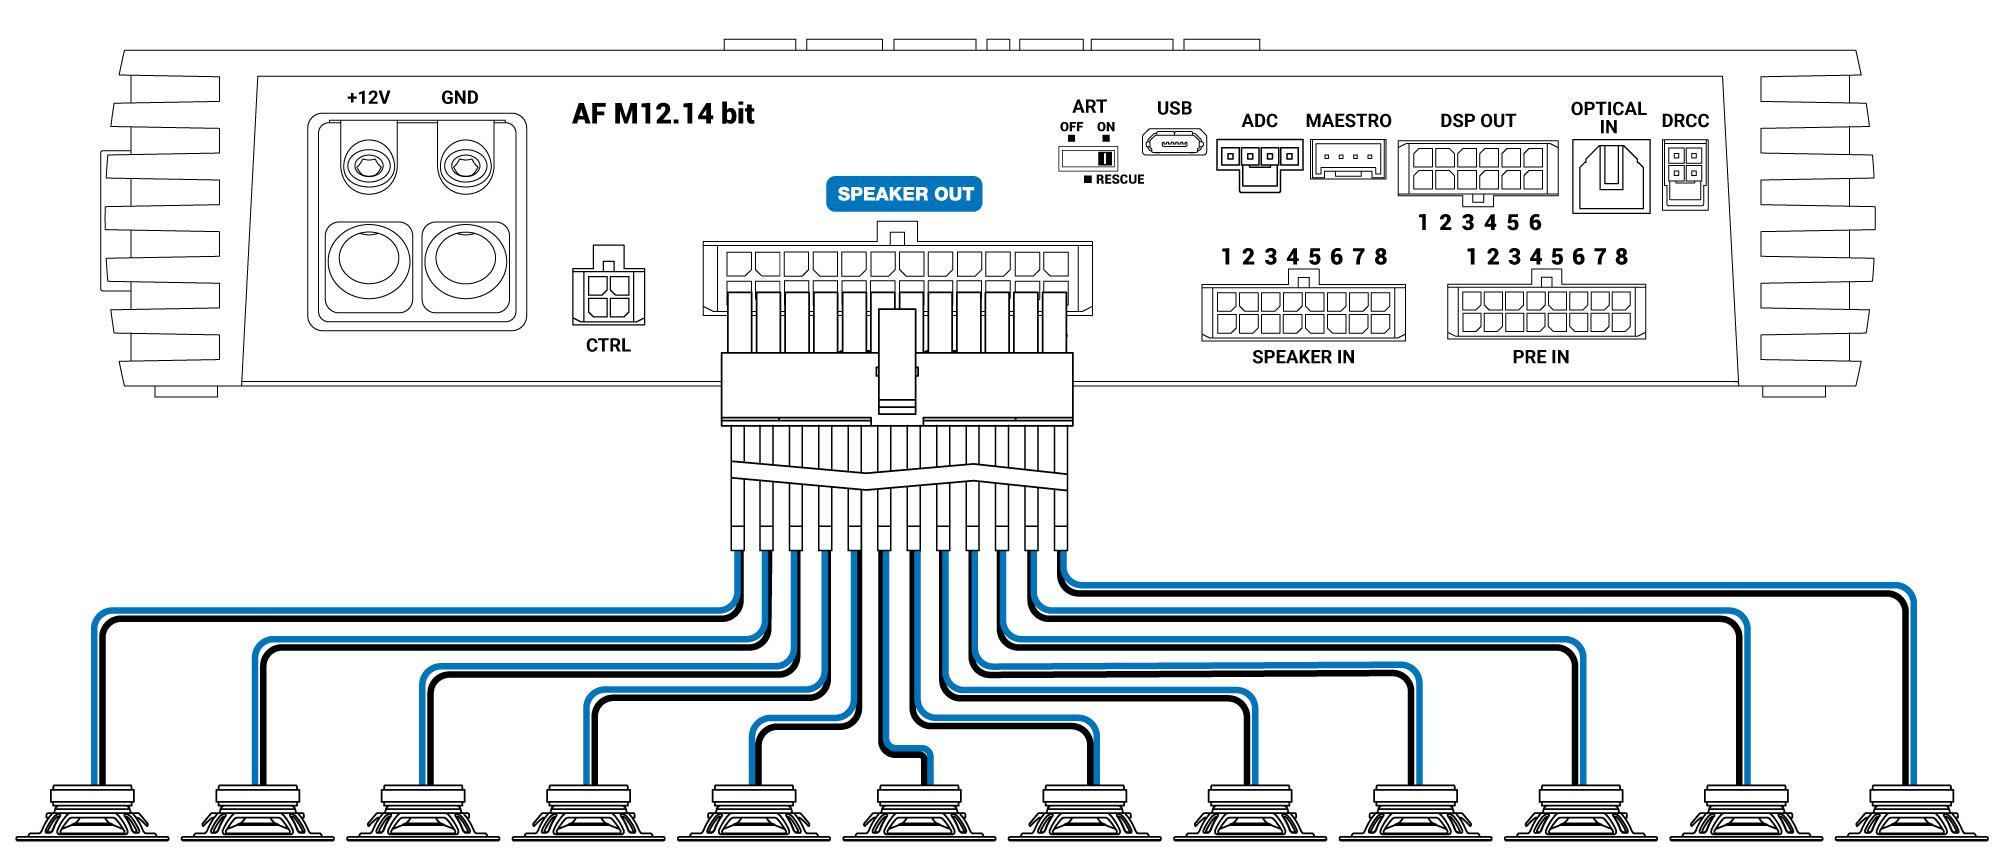 Speaker-out-AF-M12.14-bit.png